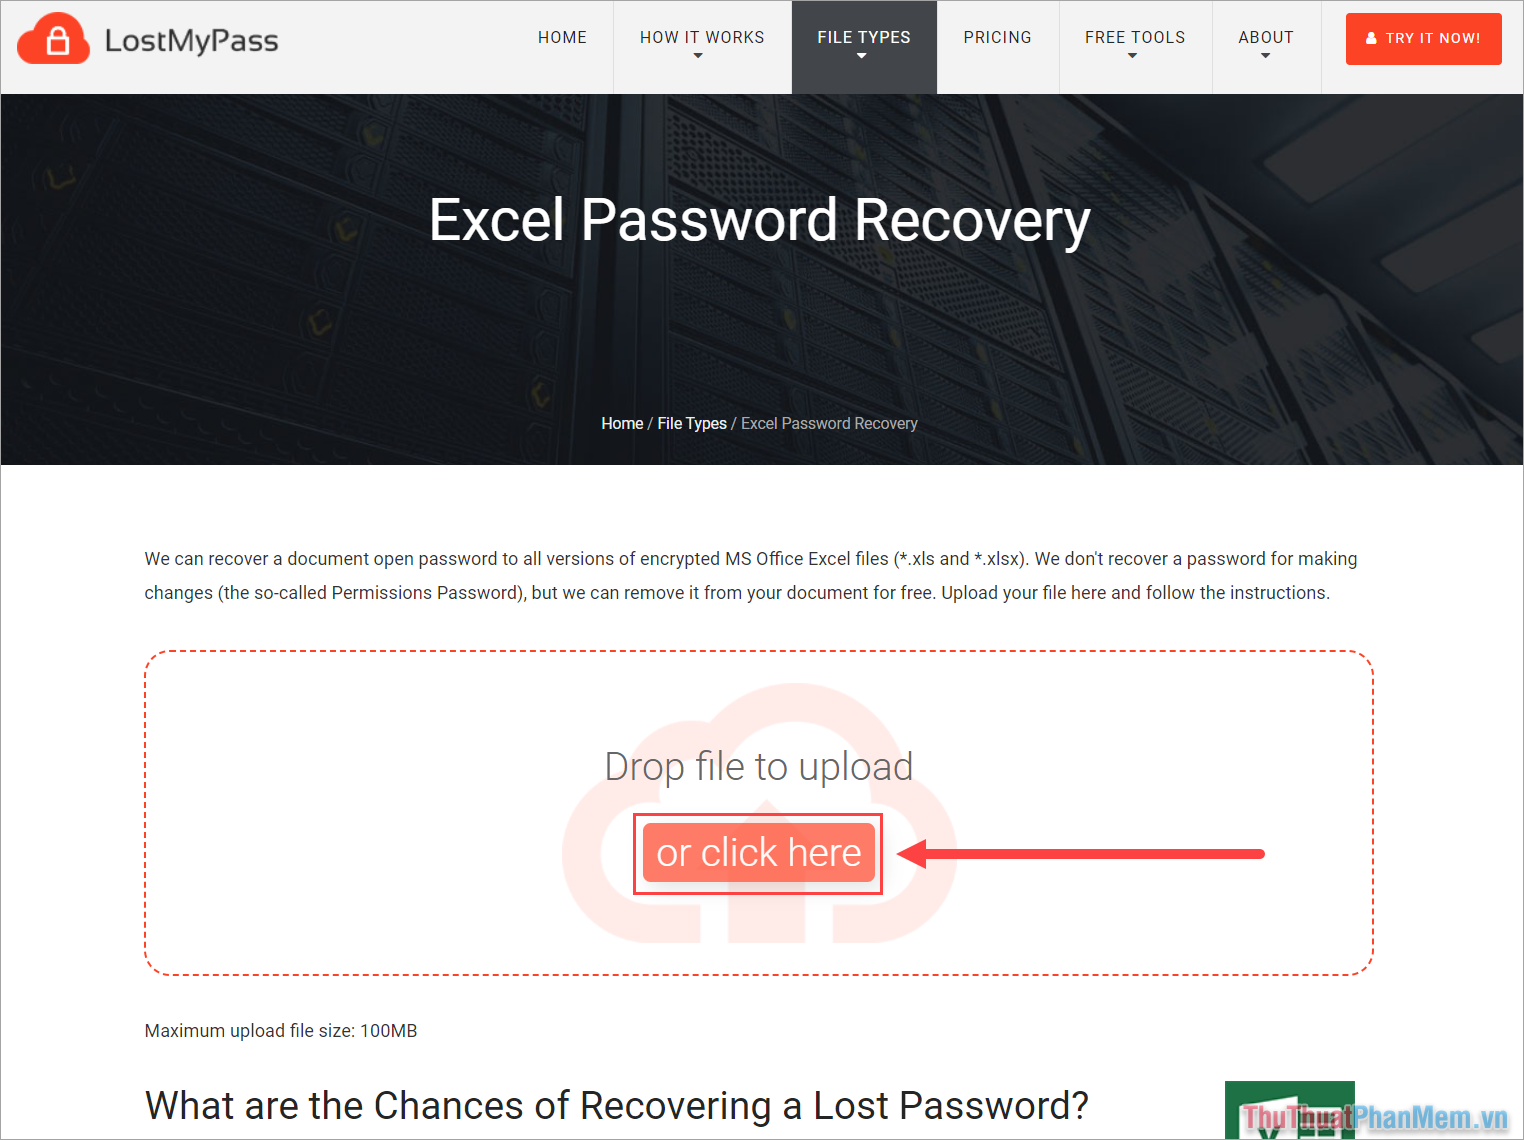 Cách mở khóa file Excel khi không có mật khẩu bằng công cụ Lost My Pass